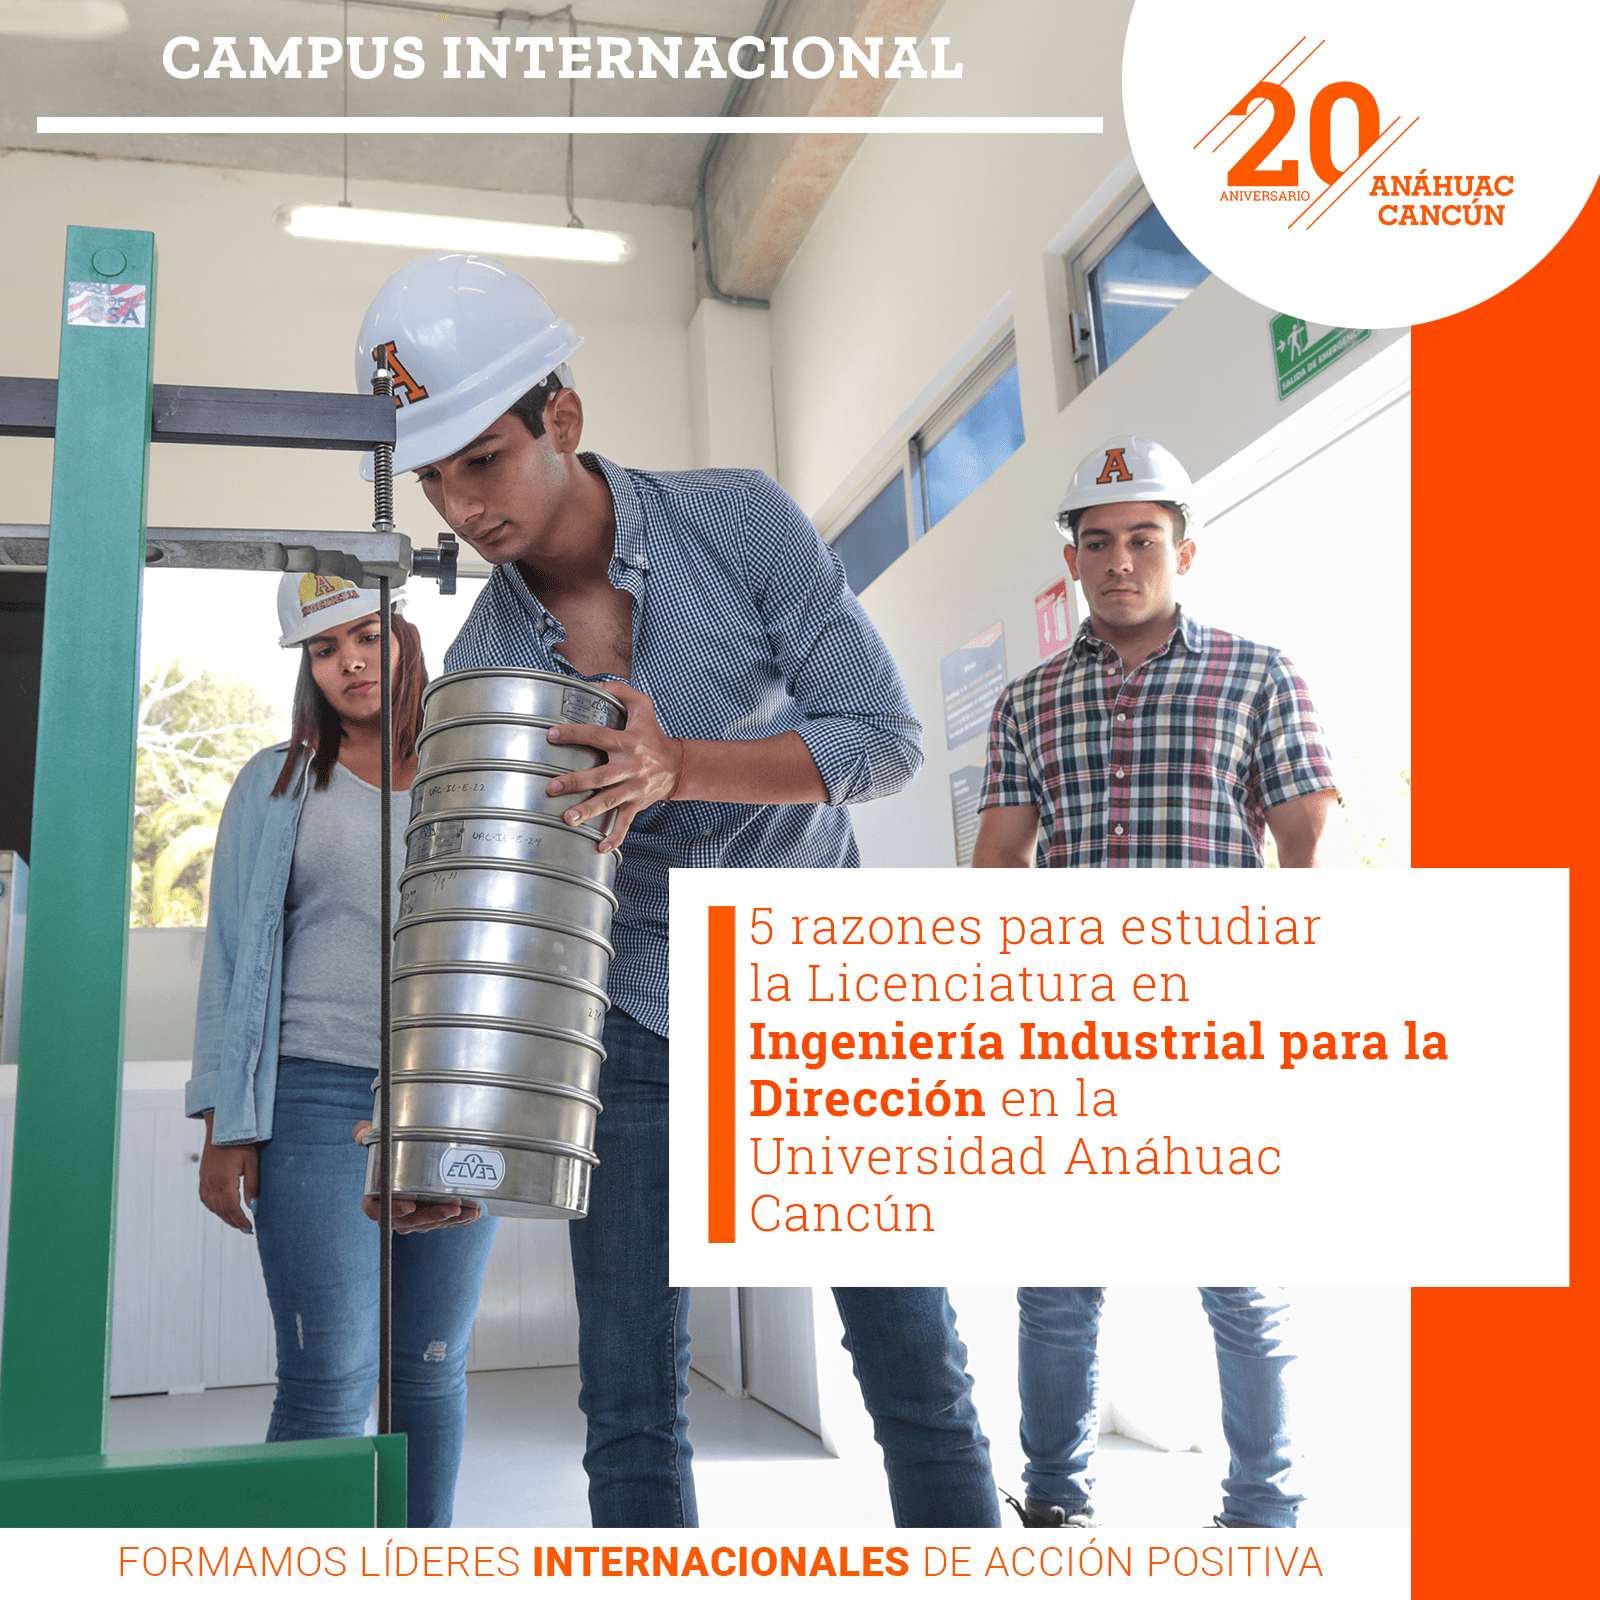 5 razones para estudiar la Licenciatura en Ingeniería Industrial para la Dirección en la Universidad Anáhuac Cancún